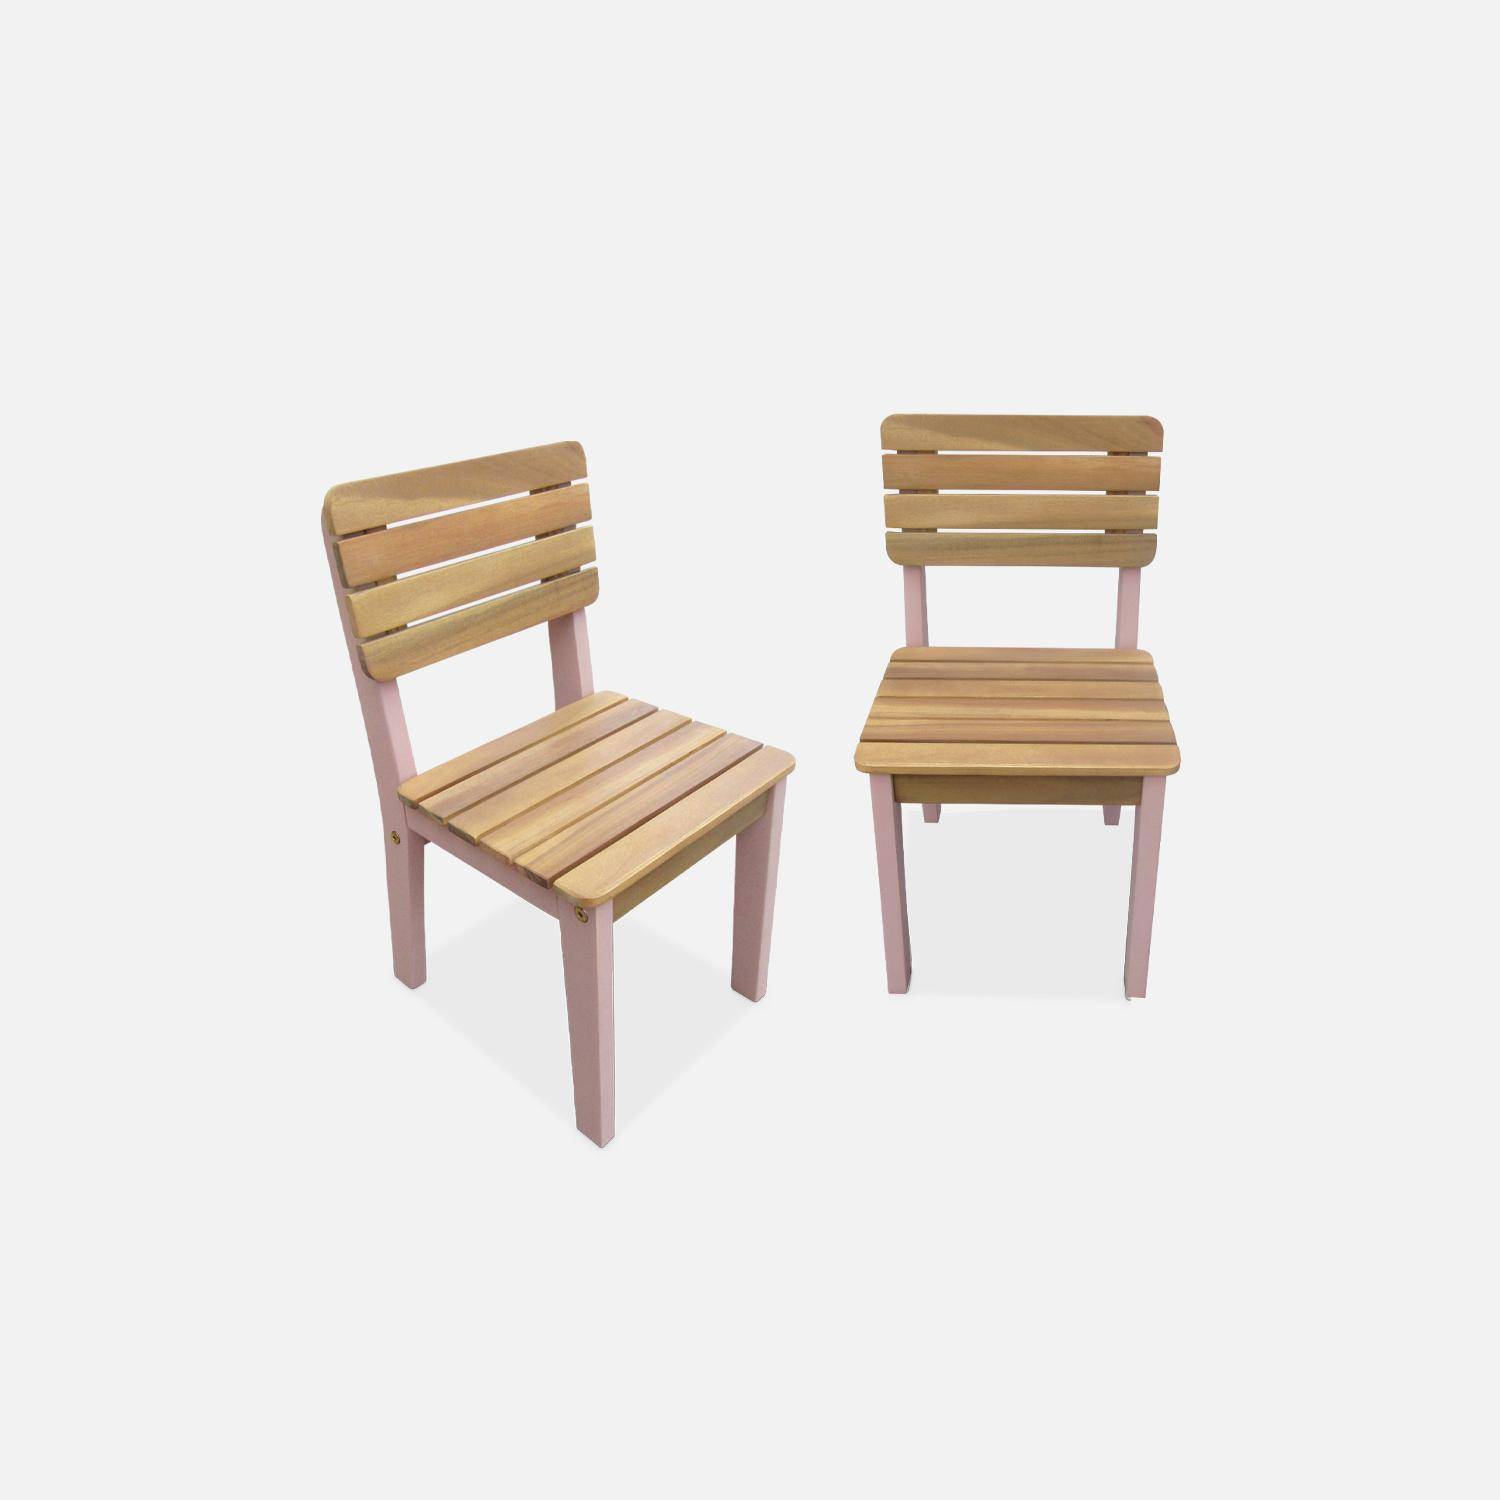  Lot de 2 chaises en bois d'acacia FSC pour enfant, salon de jardin enfant rose, intérieur / extérieur  Photo3